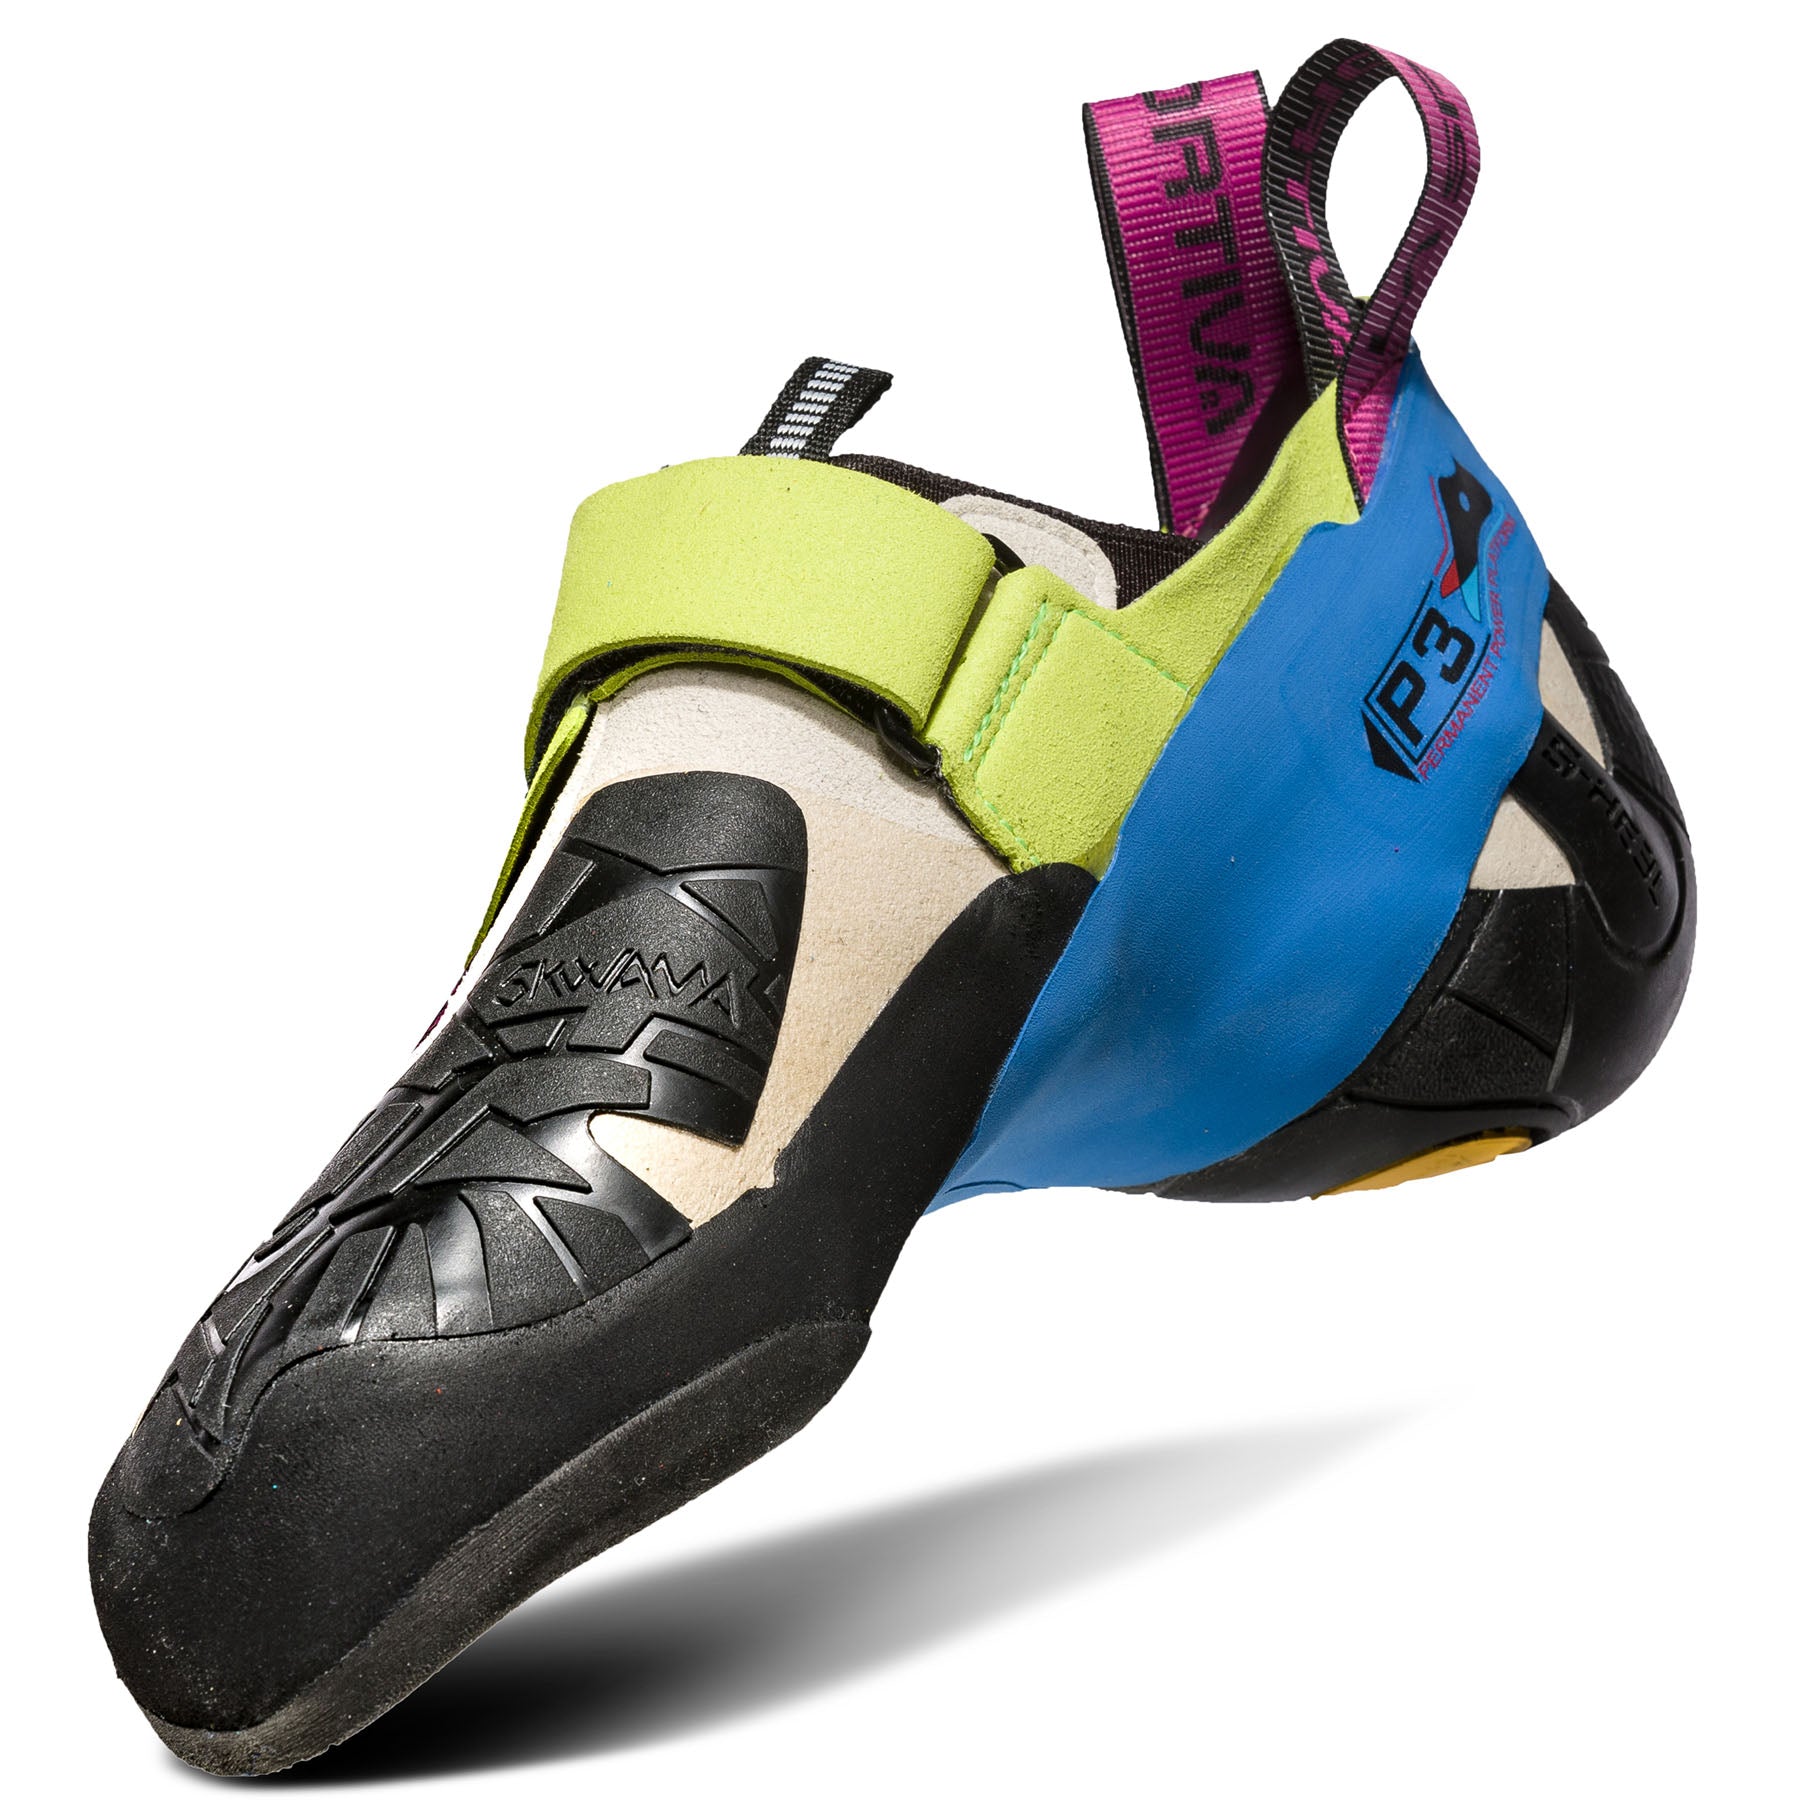 la sportiva womens' skwama climbing shoe, inside side view